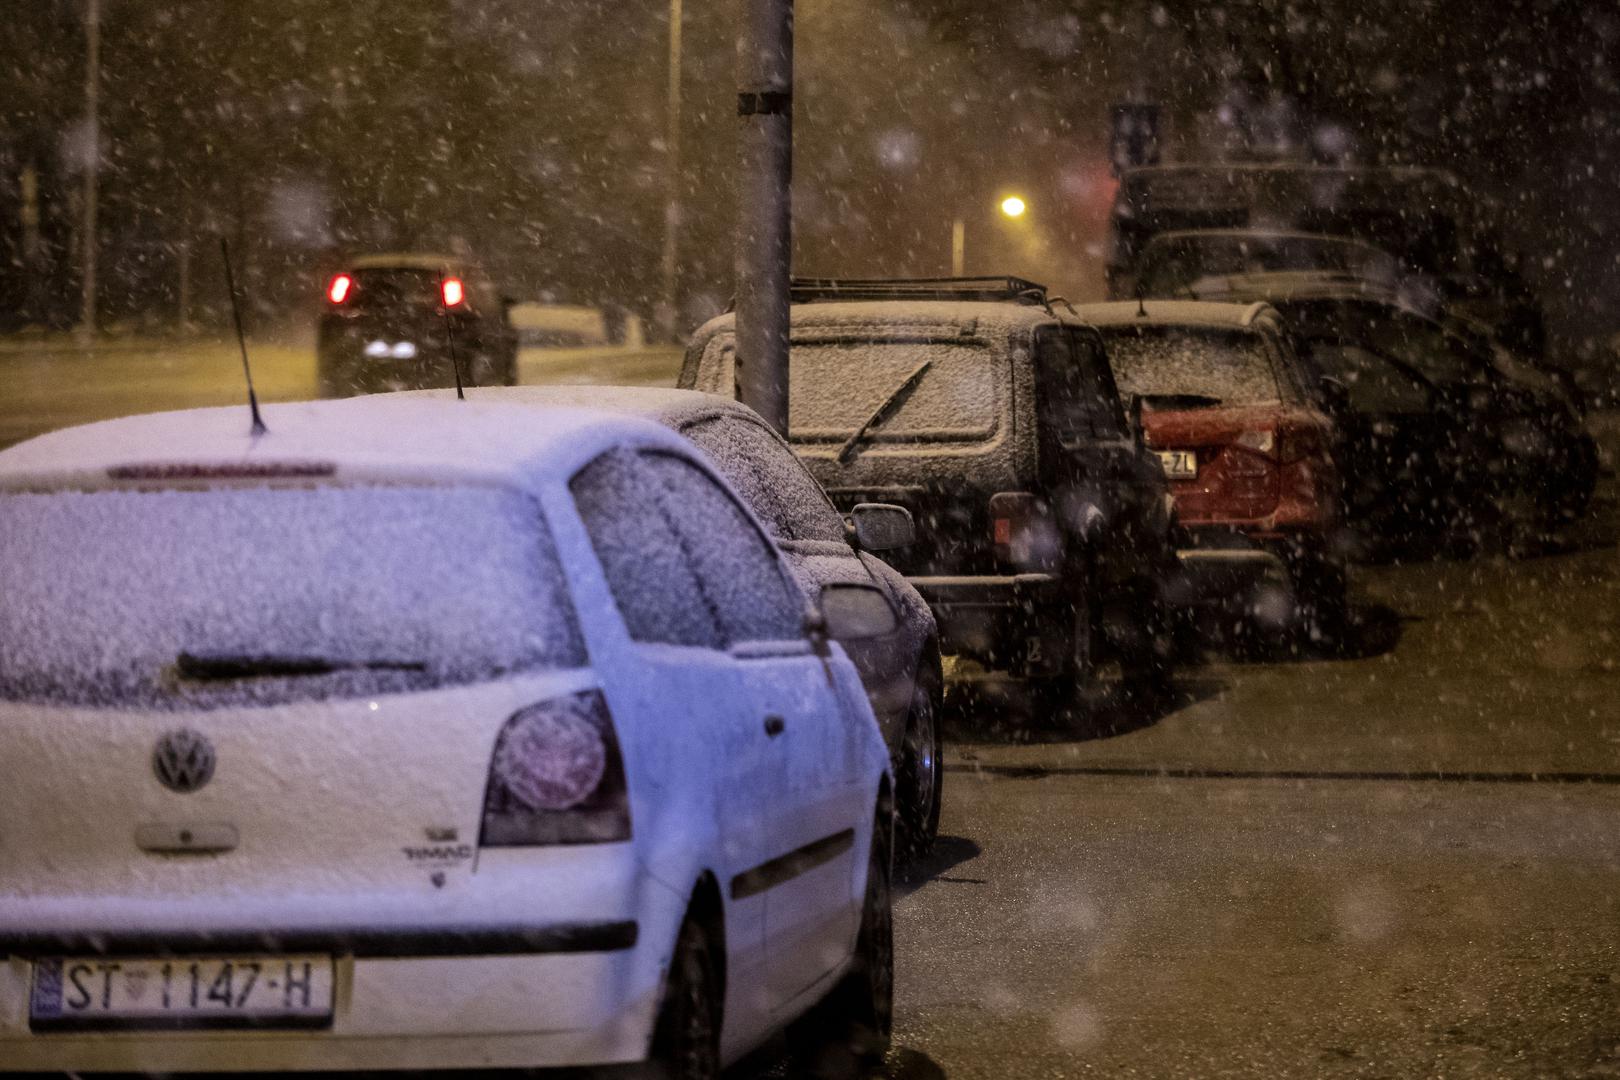 06.04.2021., Split - Jak snijeg pada u Splitu i okolici. Zabijelili su se automobili i zelene povrsine.
Photo: Miroslav Lelas/PIXSELL